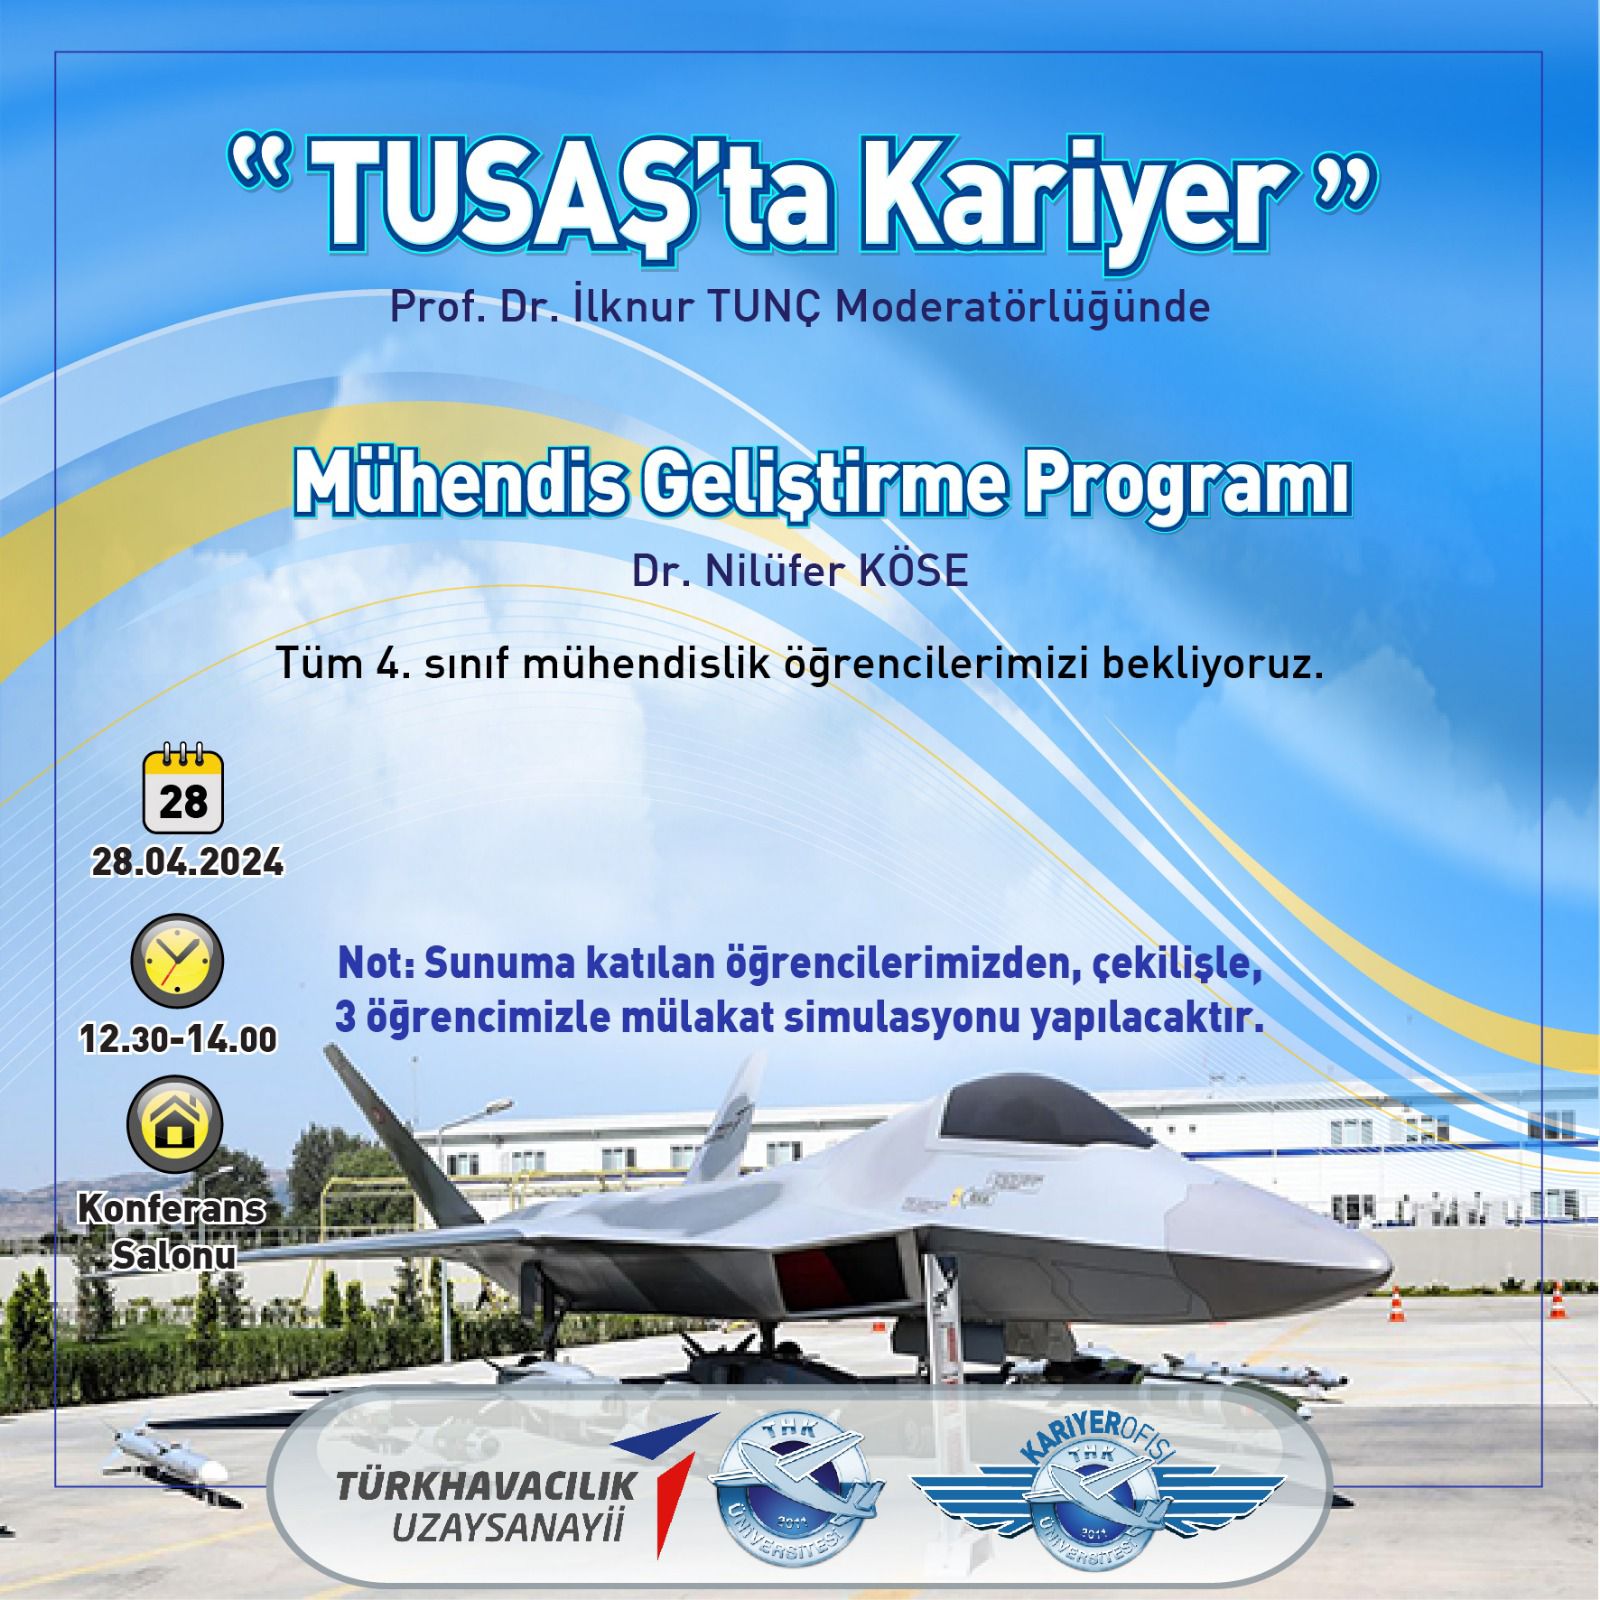 TUSAŞ'ta Kariyer - Mühendis Geliştirme Programı